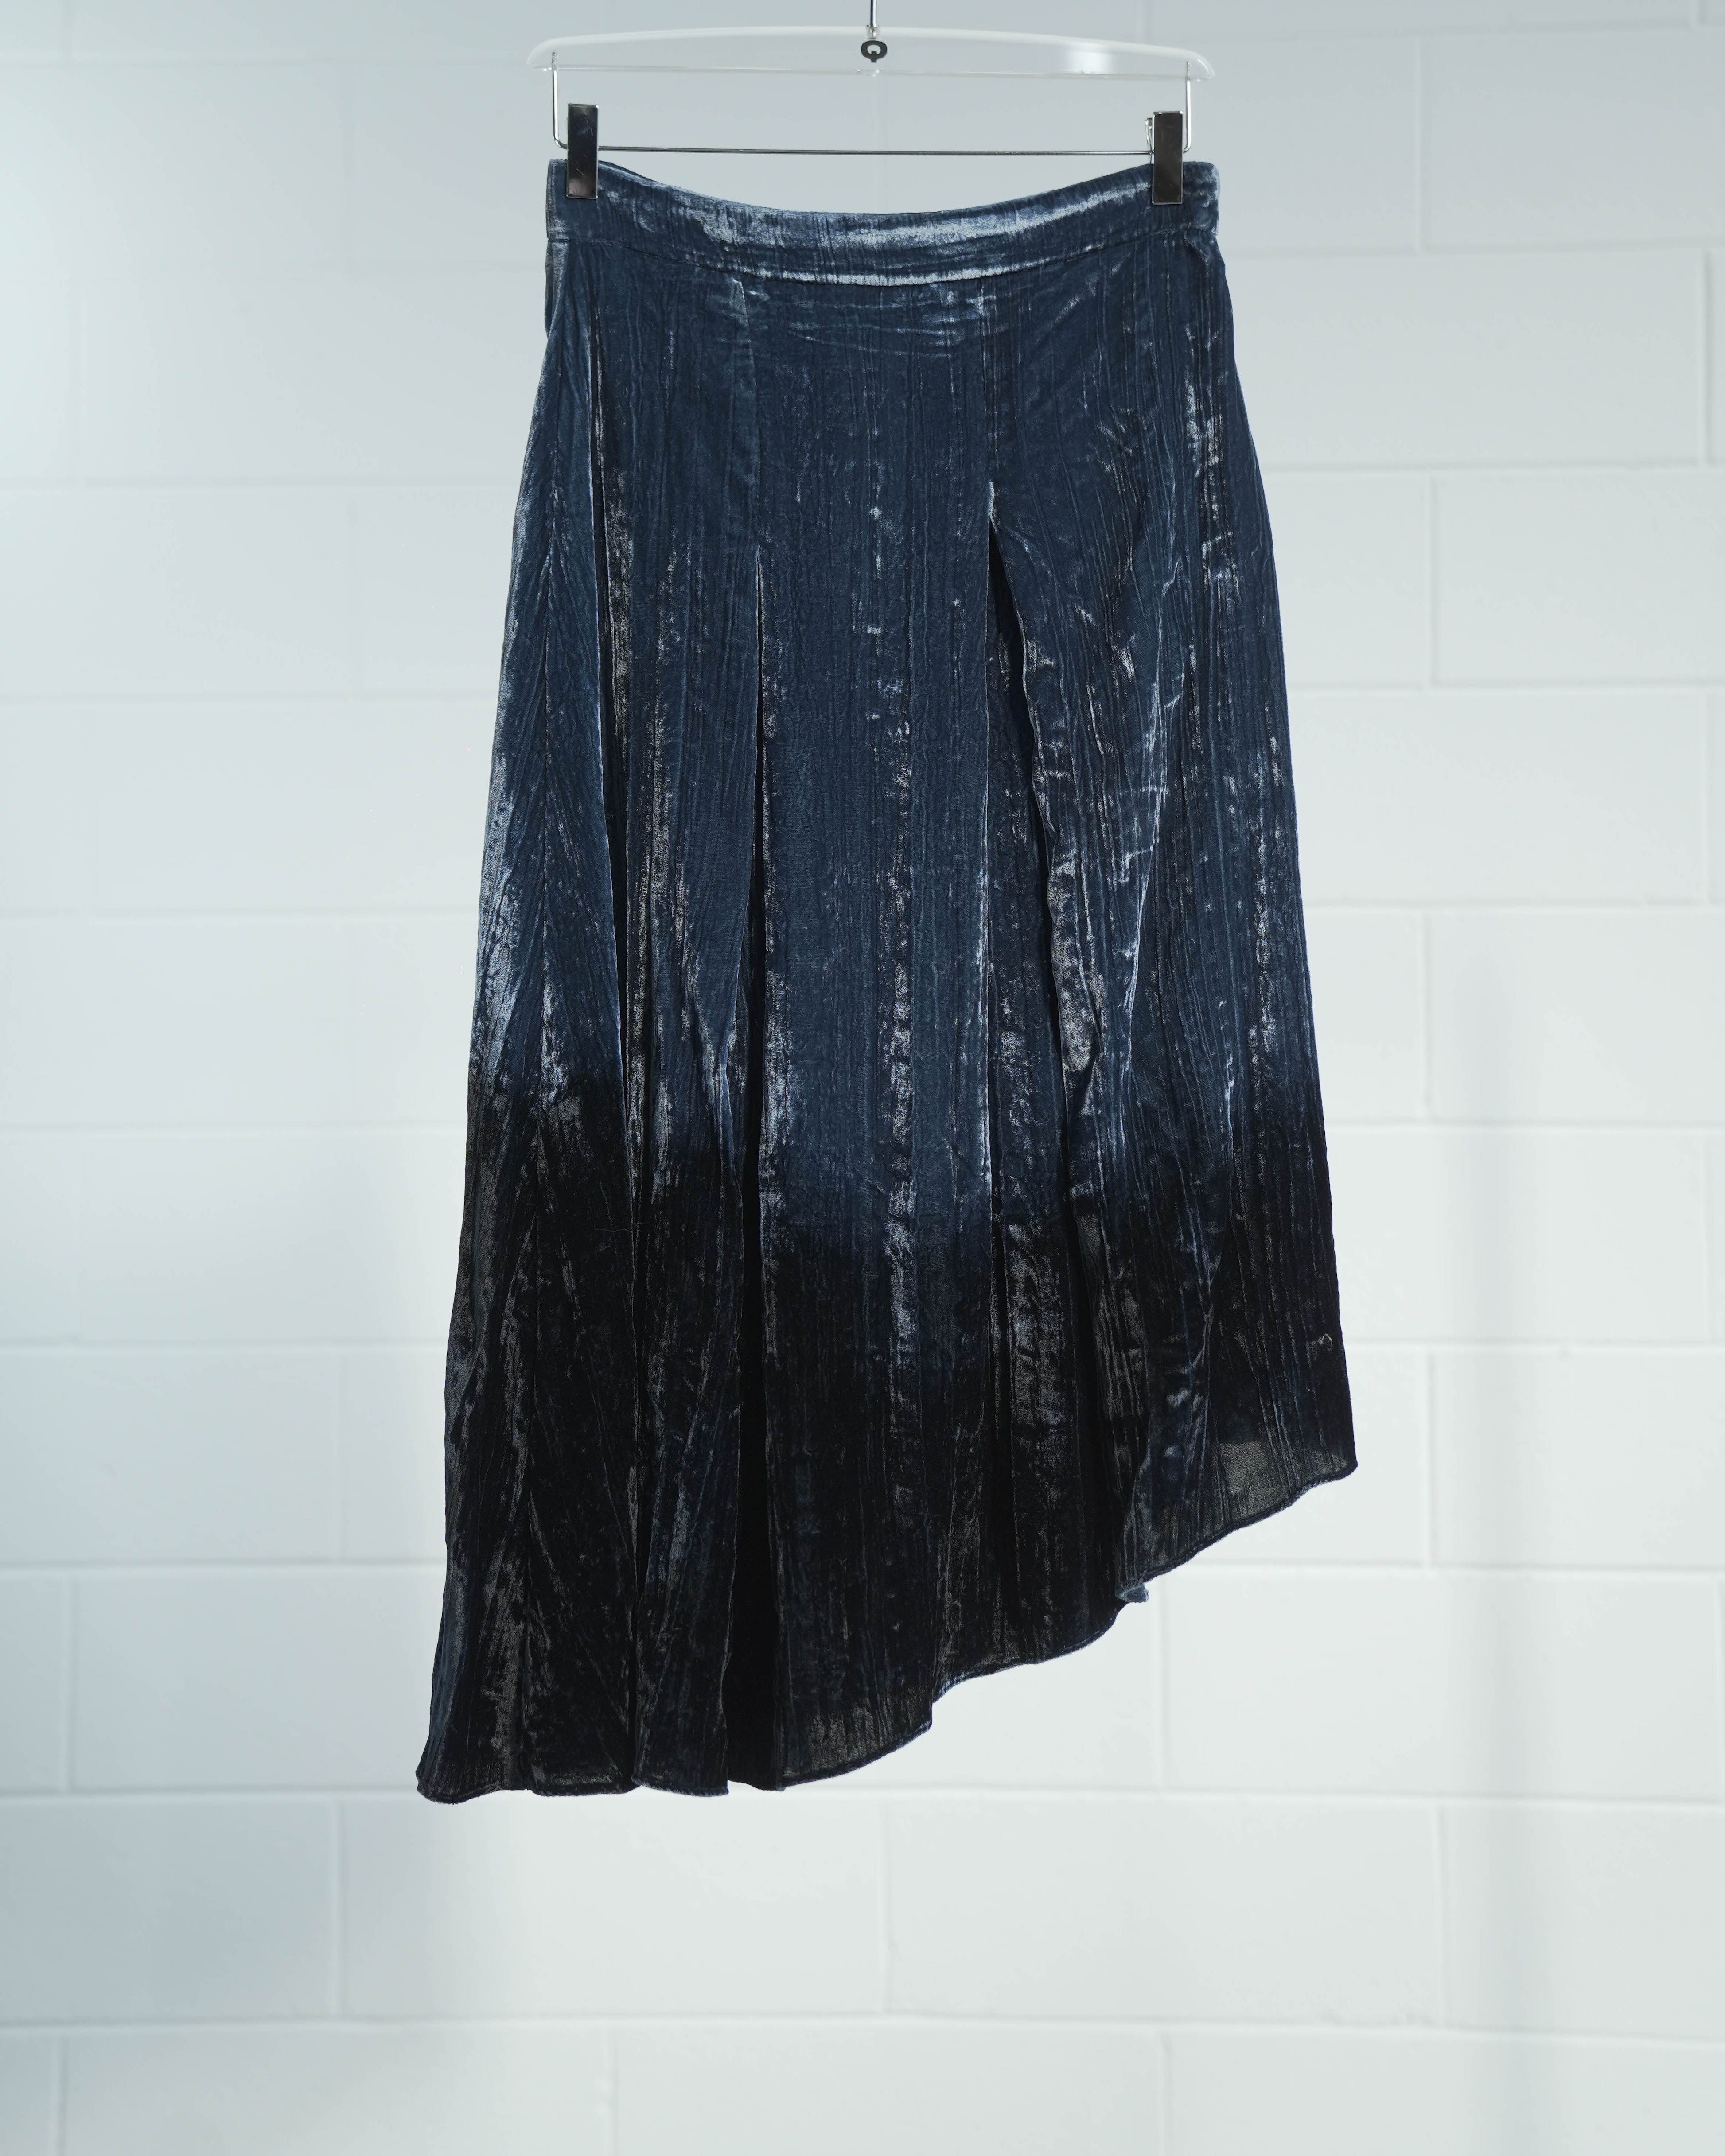 Degradé Velvet Skirt